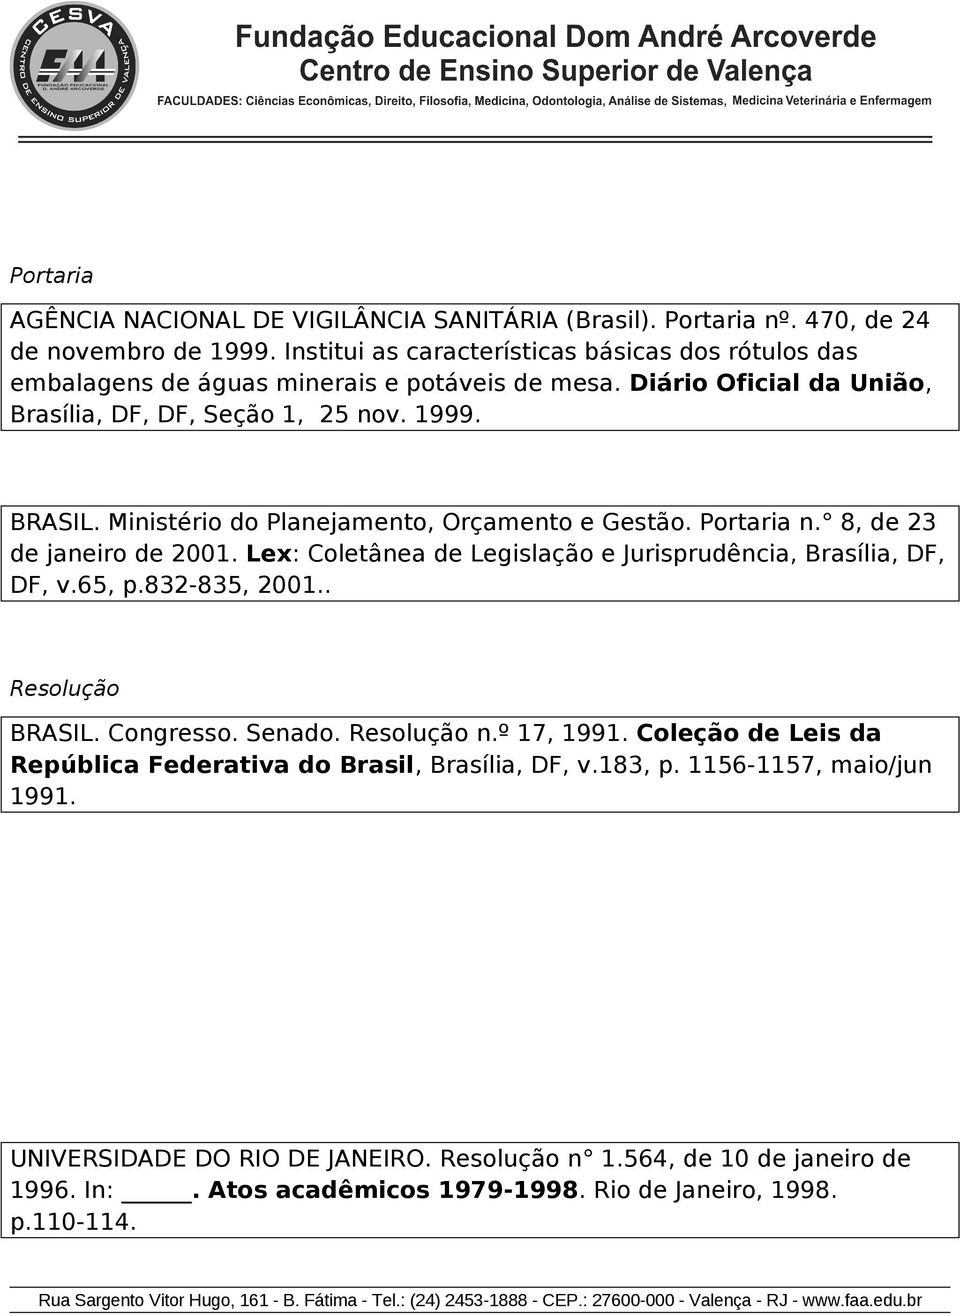 Ministéri d Planejament, Orçament e Gestã. Prtaria n. 8, de 23 de janeir de 2001. Lex: Cletânea de Legislaçã e Jurisprudência, Brasília, DF, DF, v.65, p.832-835, 2001.